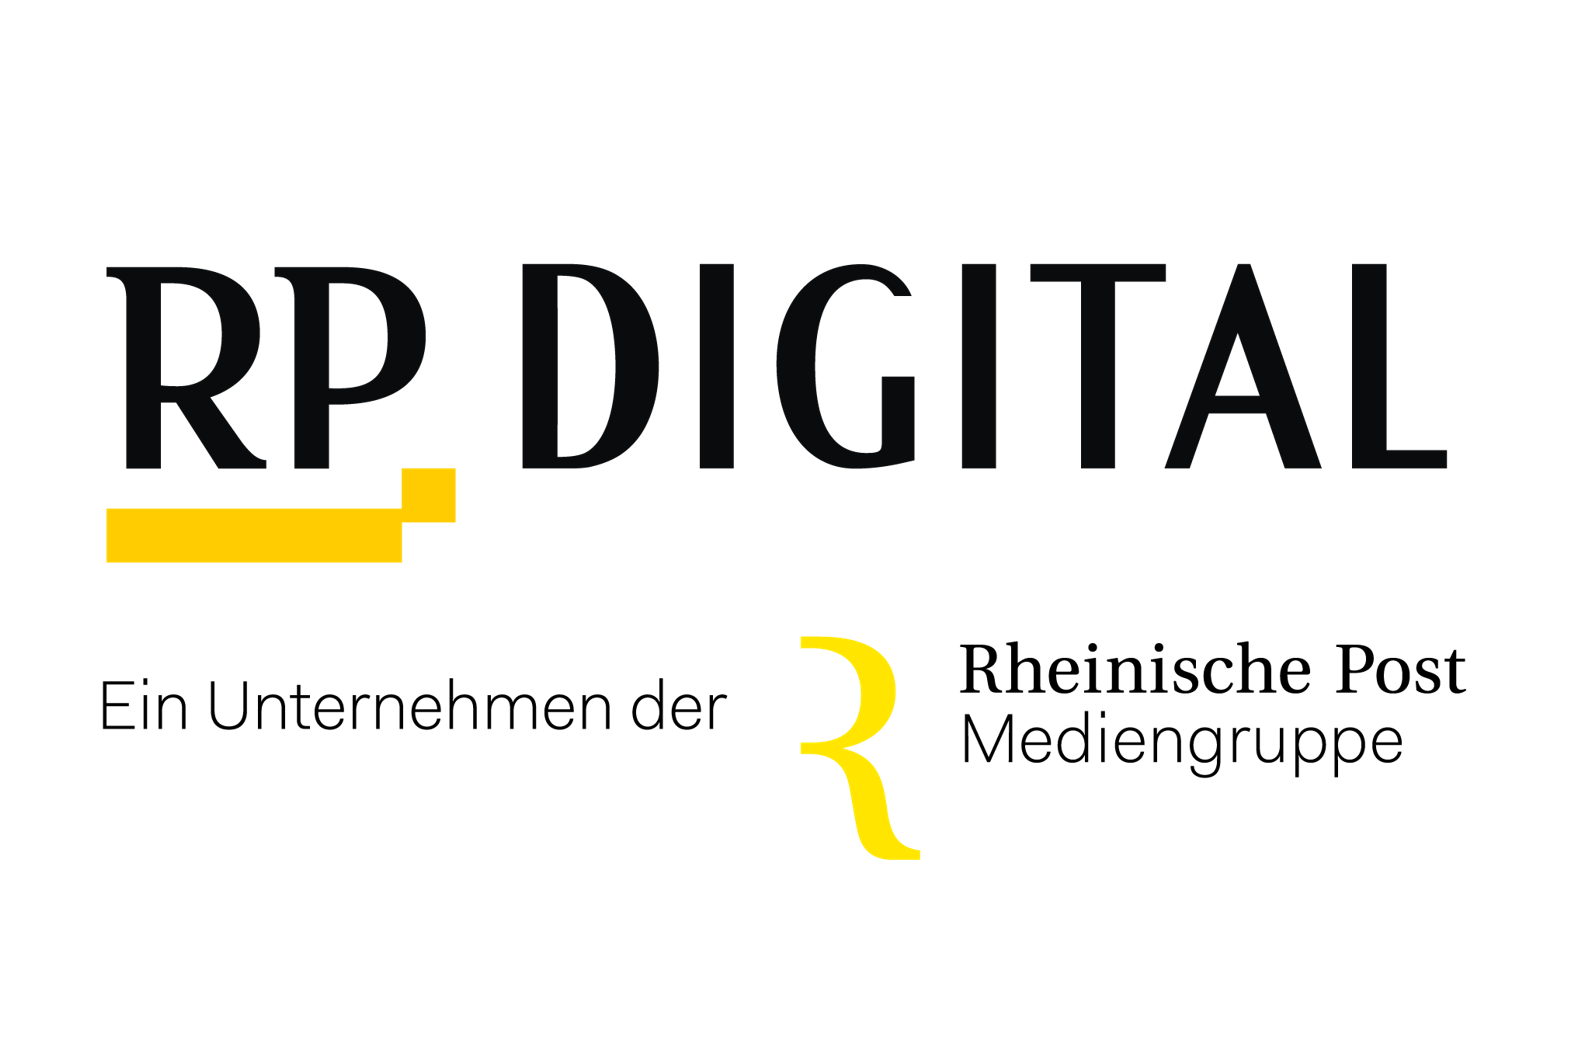 RP Digital – Ein Unternehmen der Rheinische Post Mediengruppe